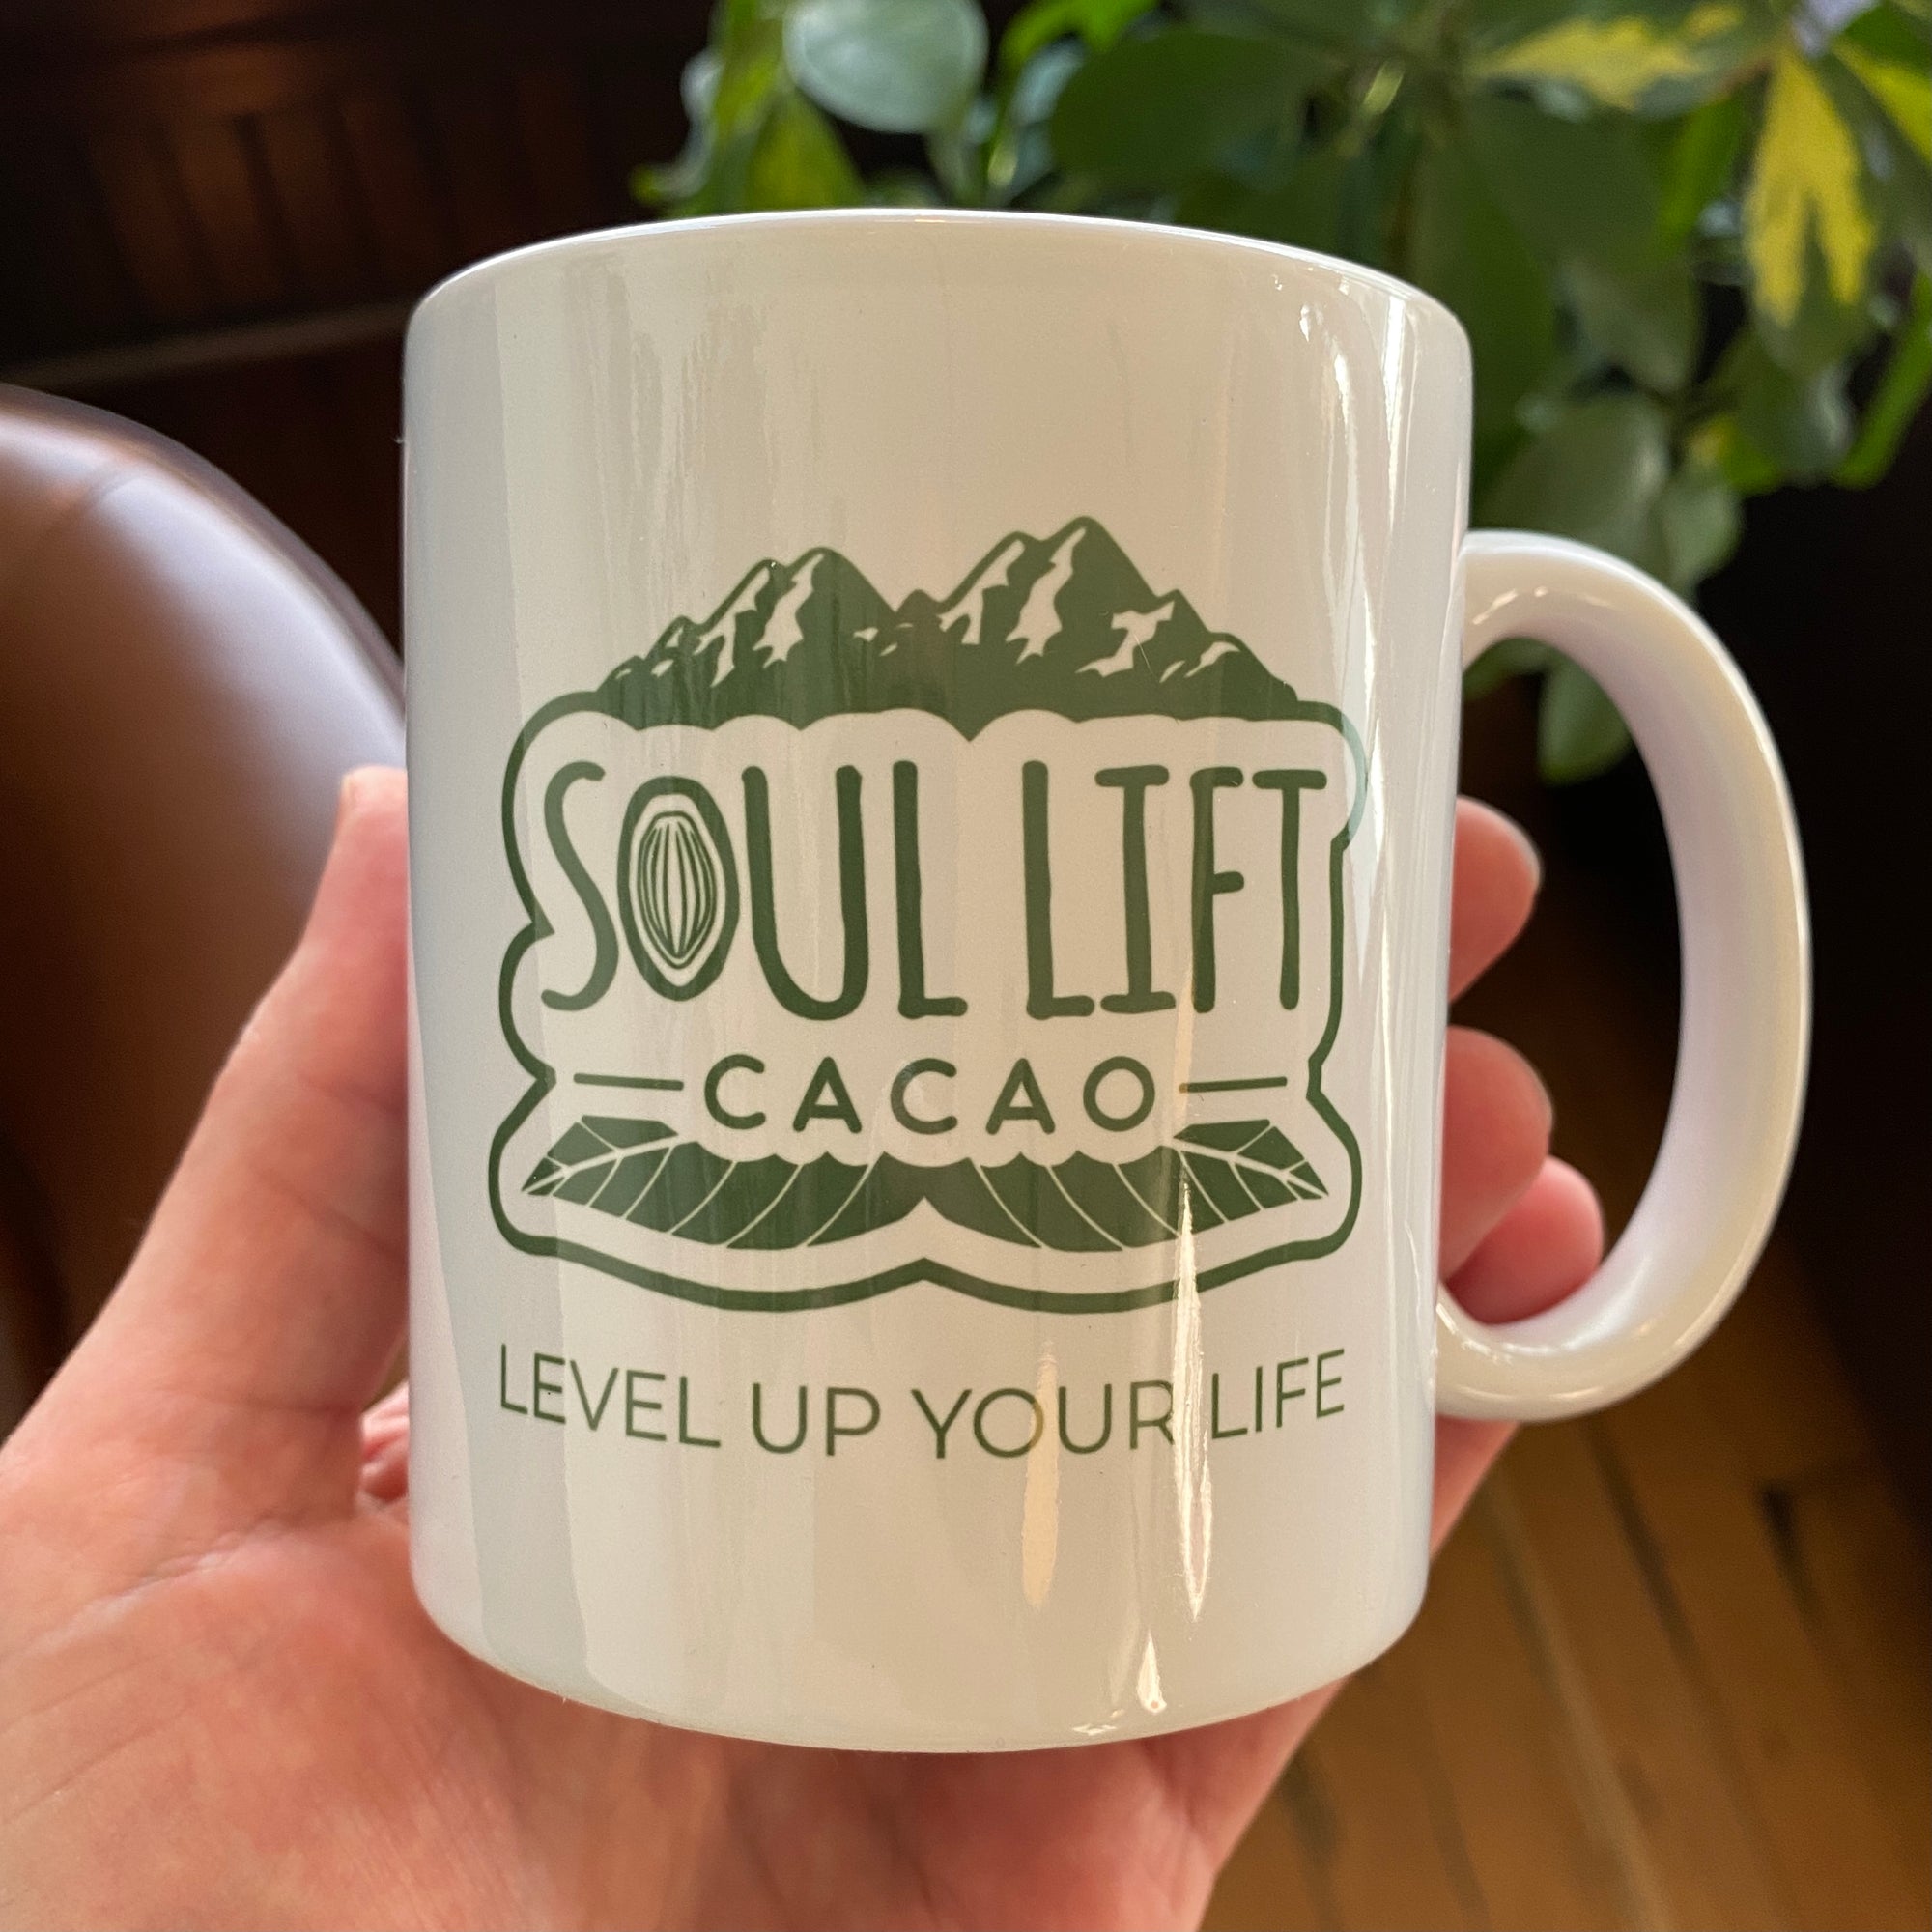 Tasse de cacao Soul Lift